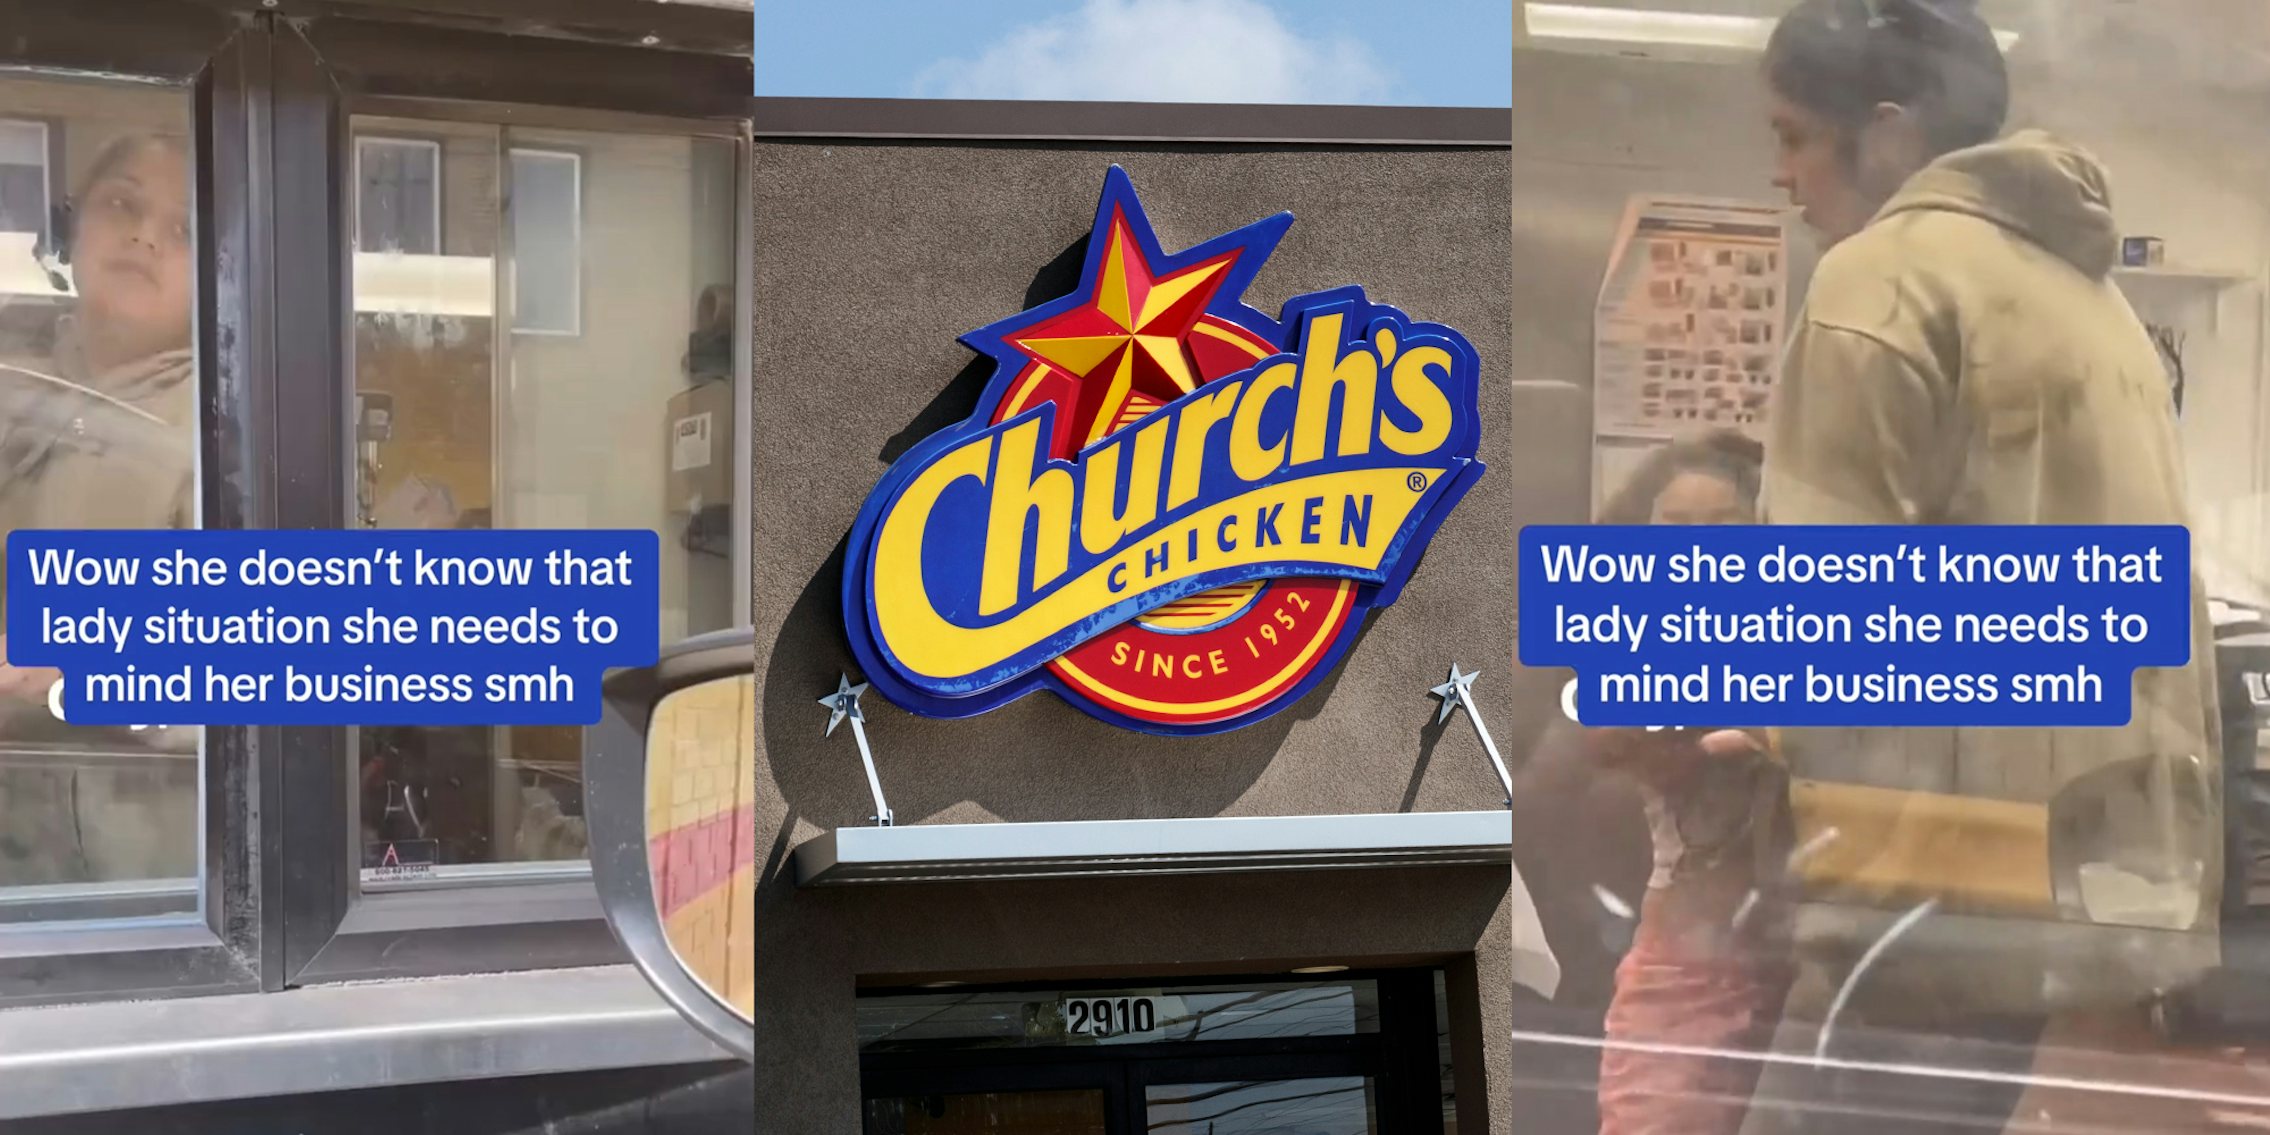 Customer catches Church's Chicken worker's child in kitchen